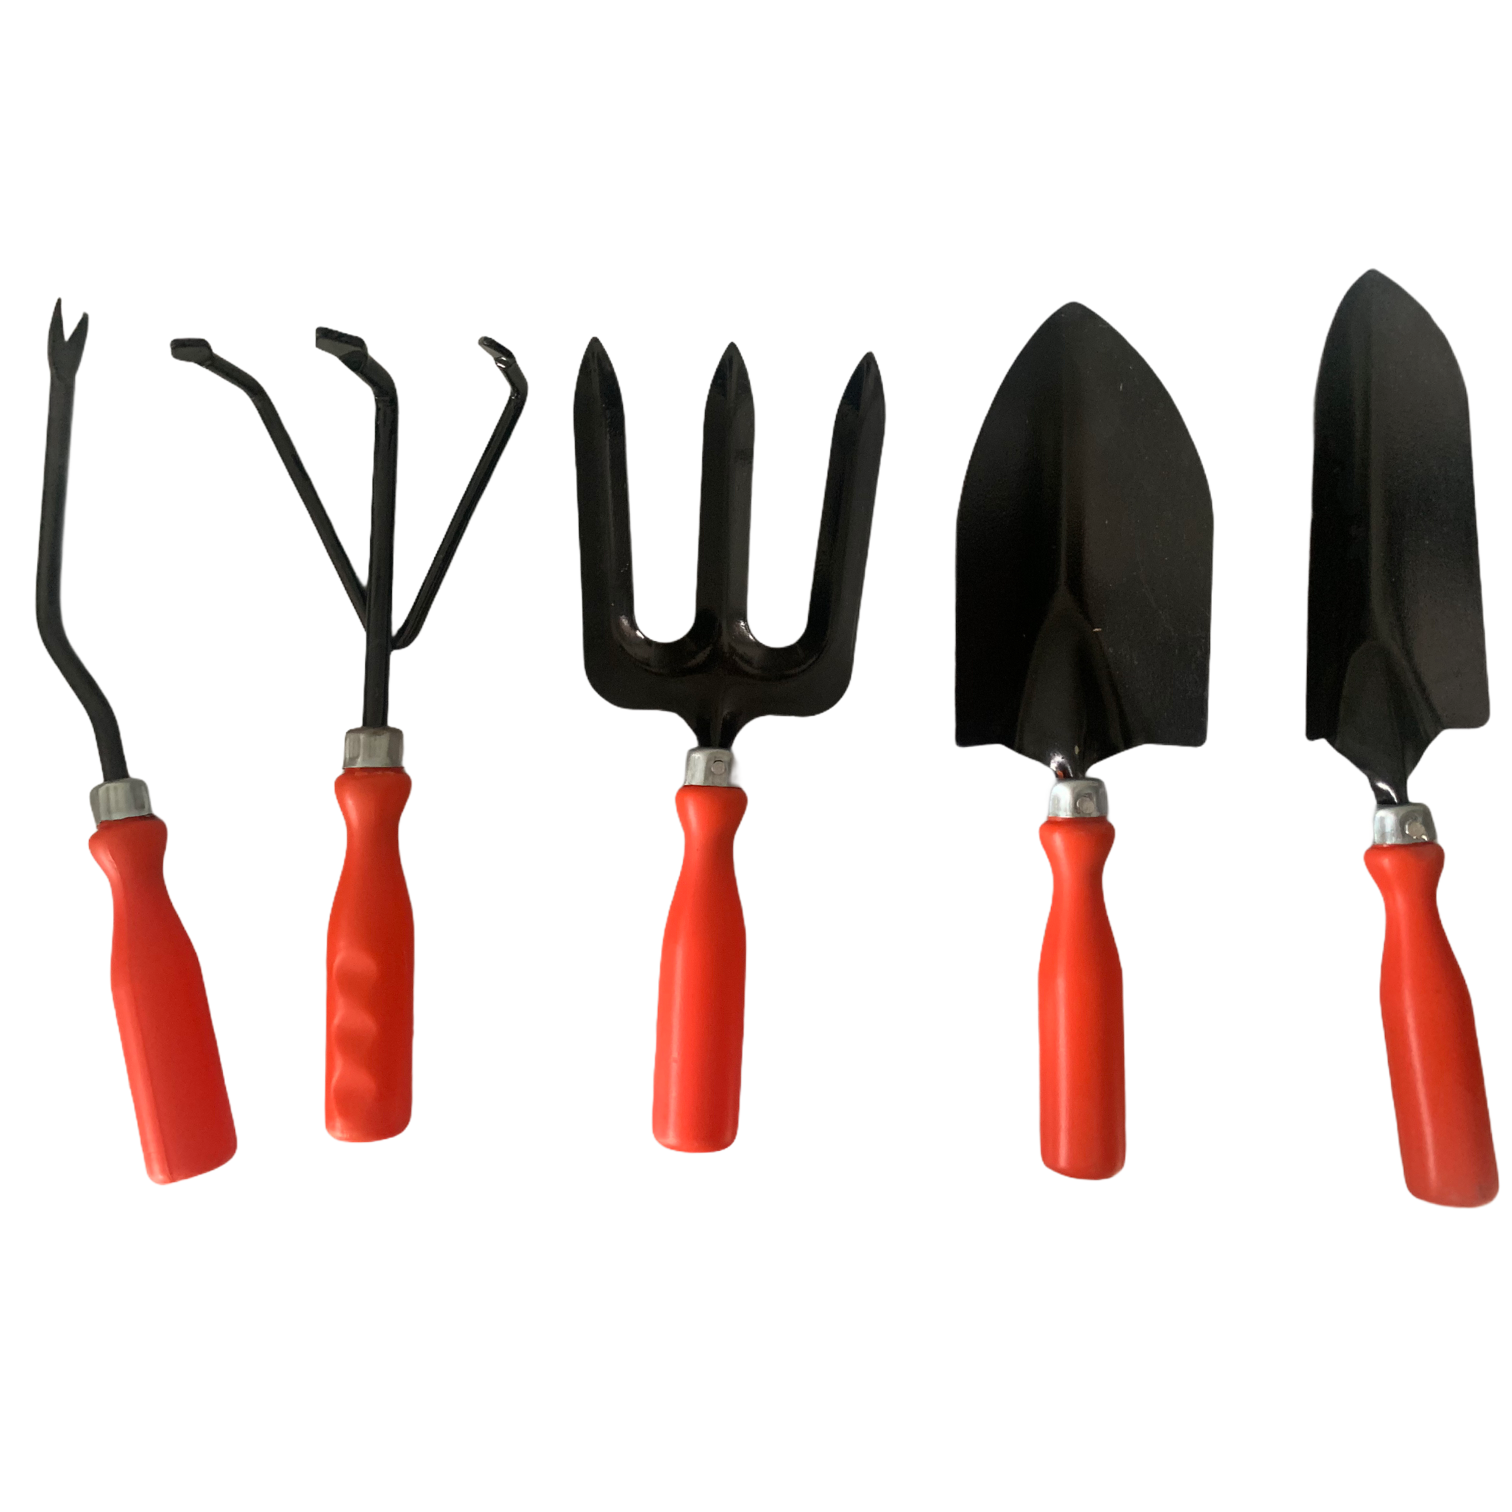 Gardening Tools - Set of 5